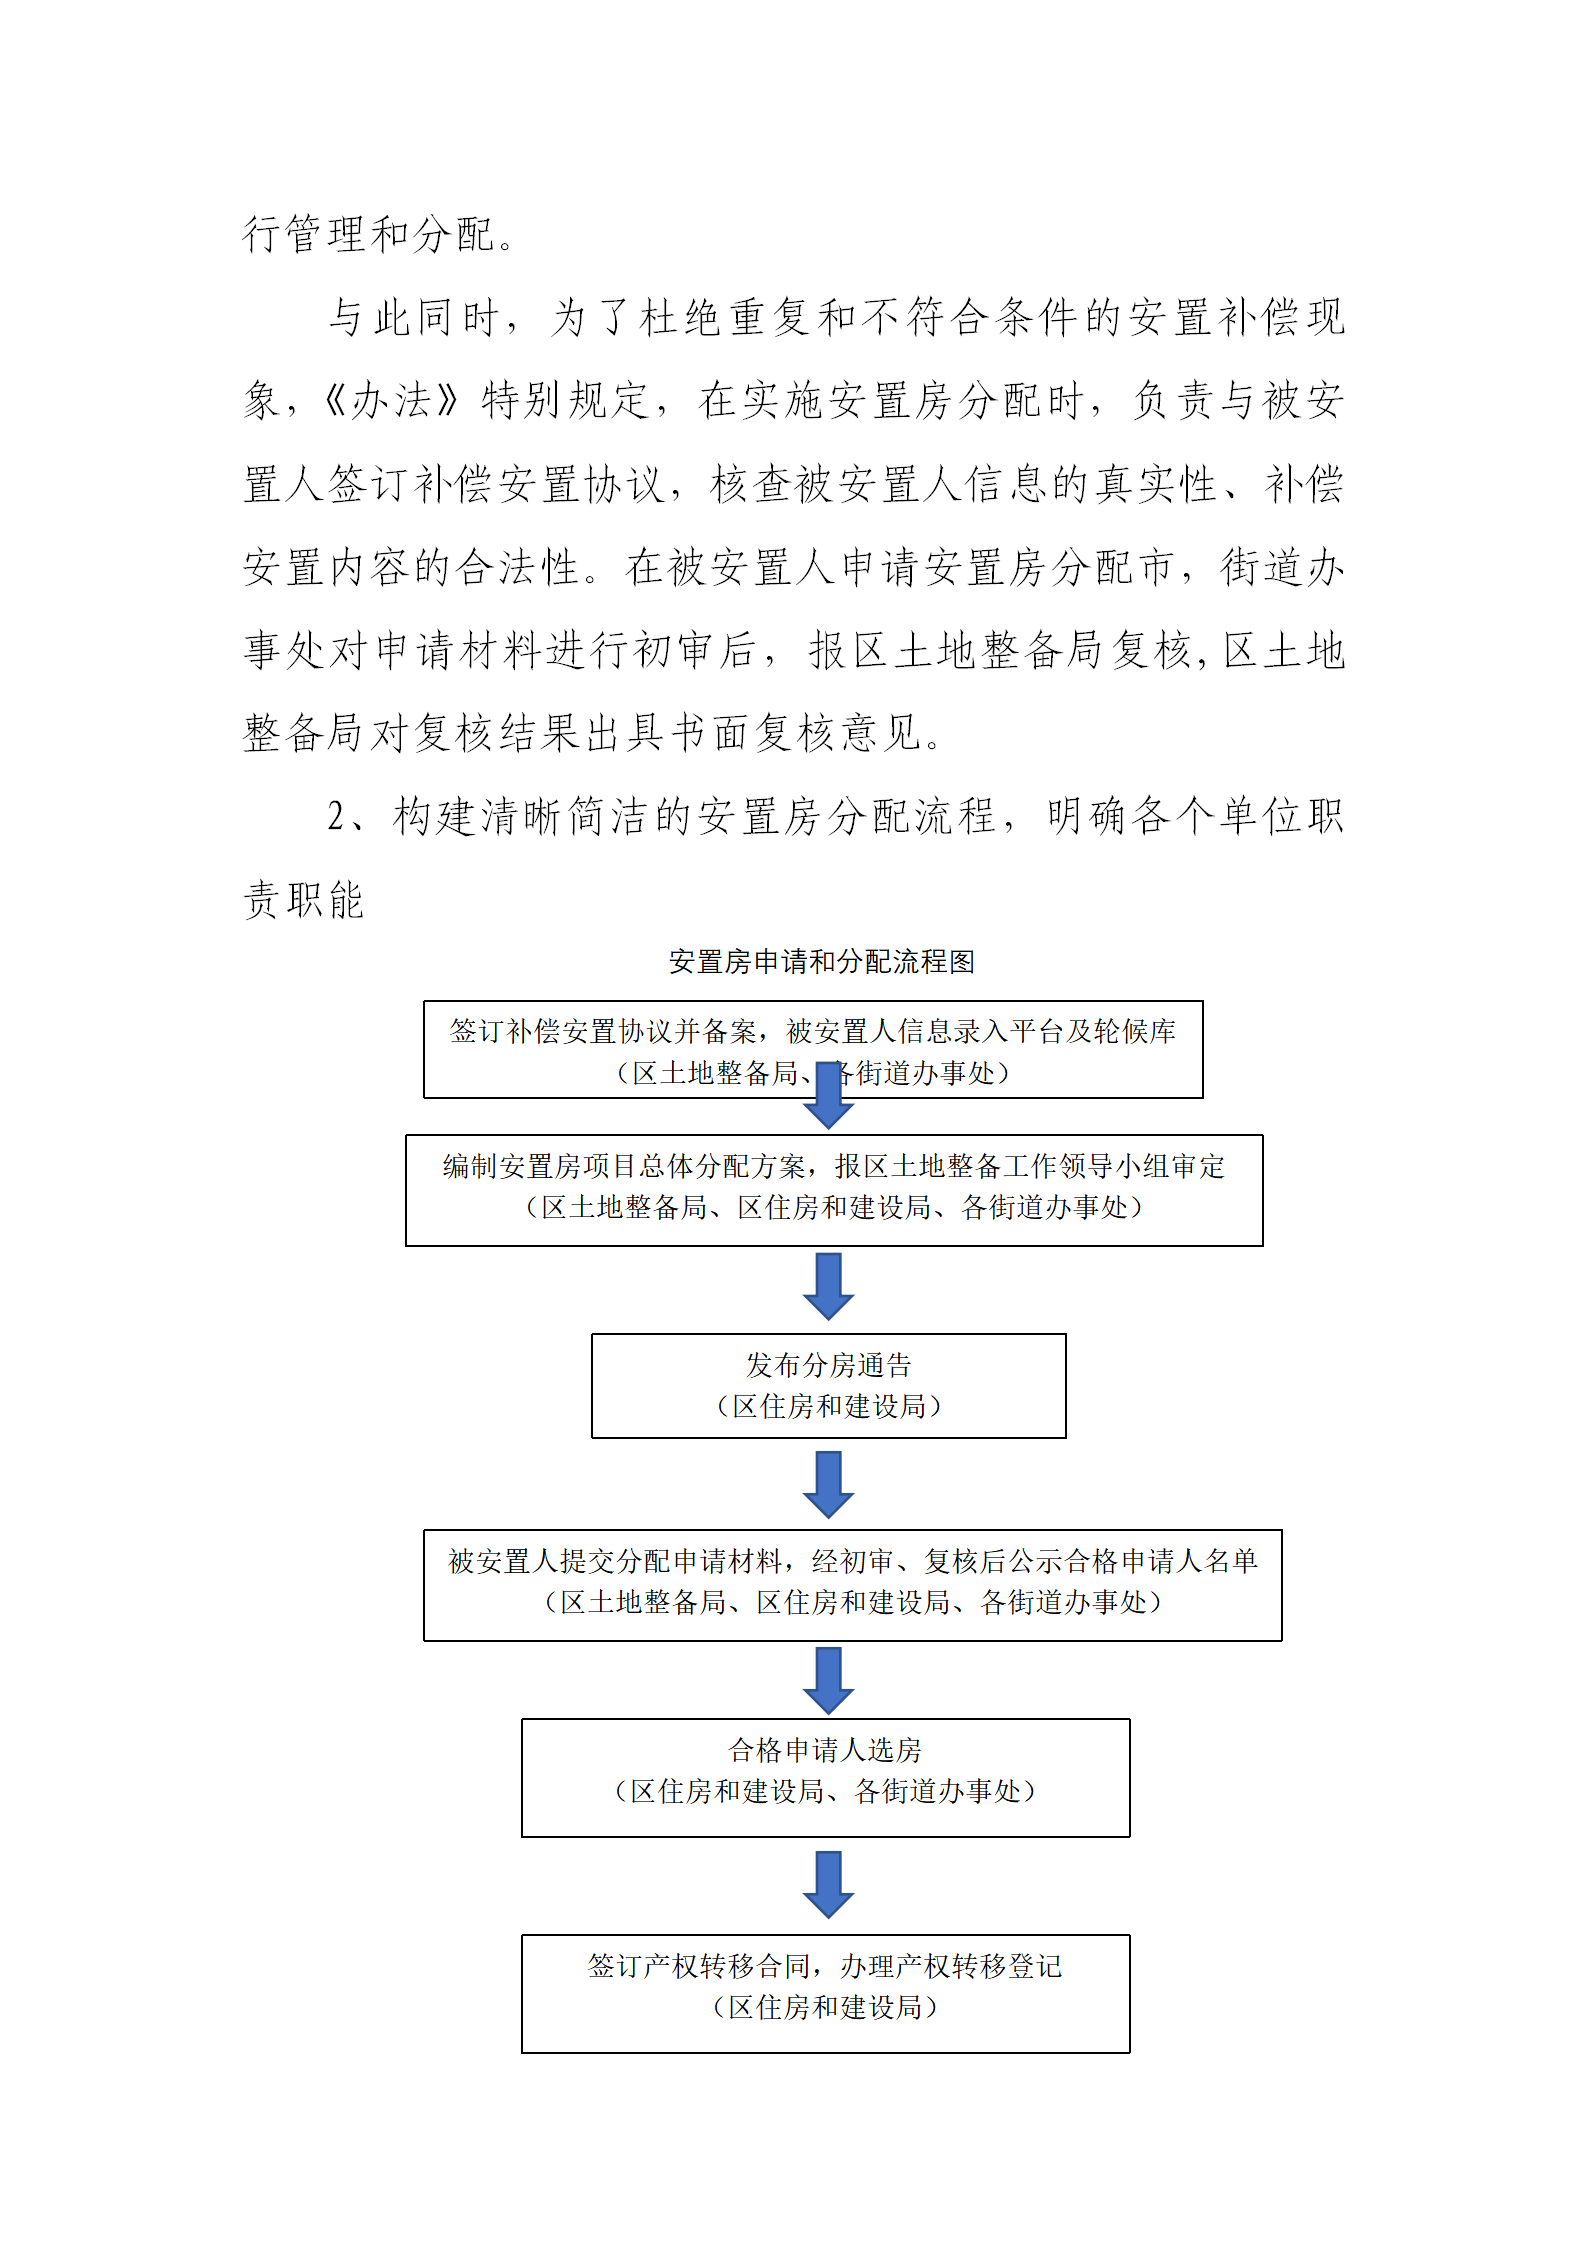 《深圳市光明区安置房管理办法》政策解读_04